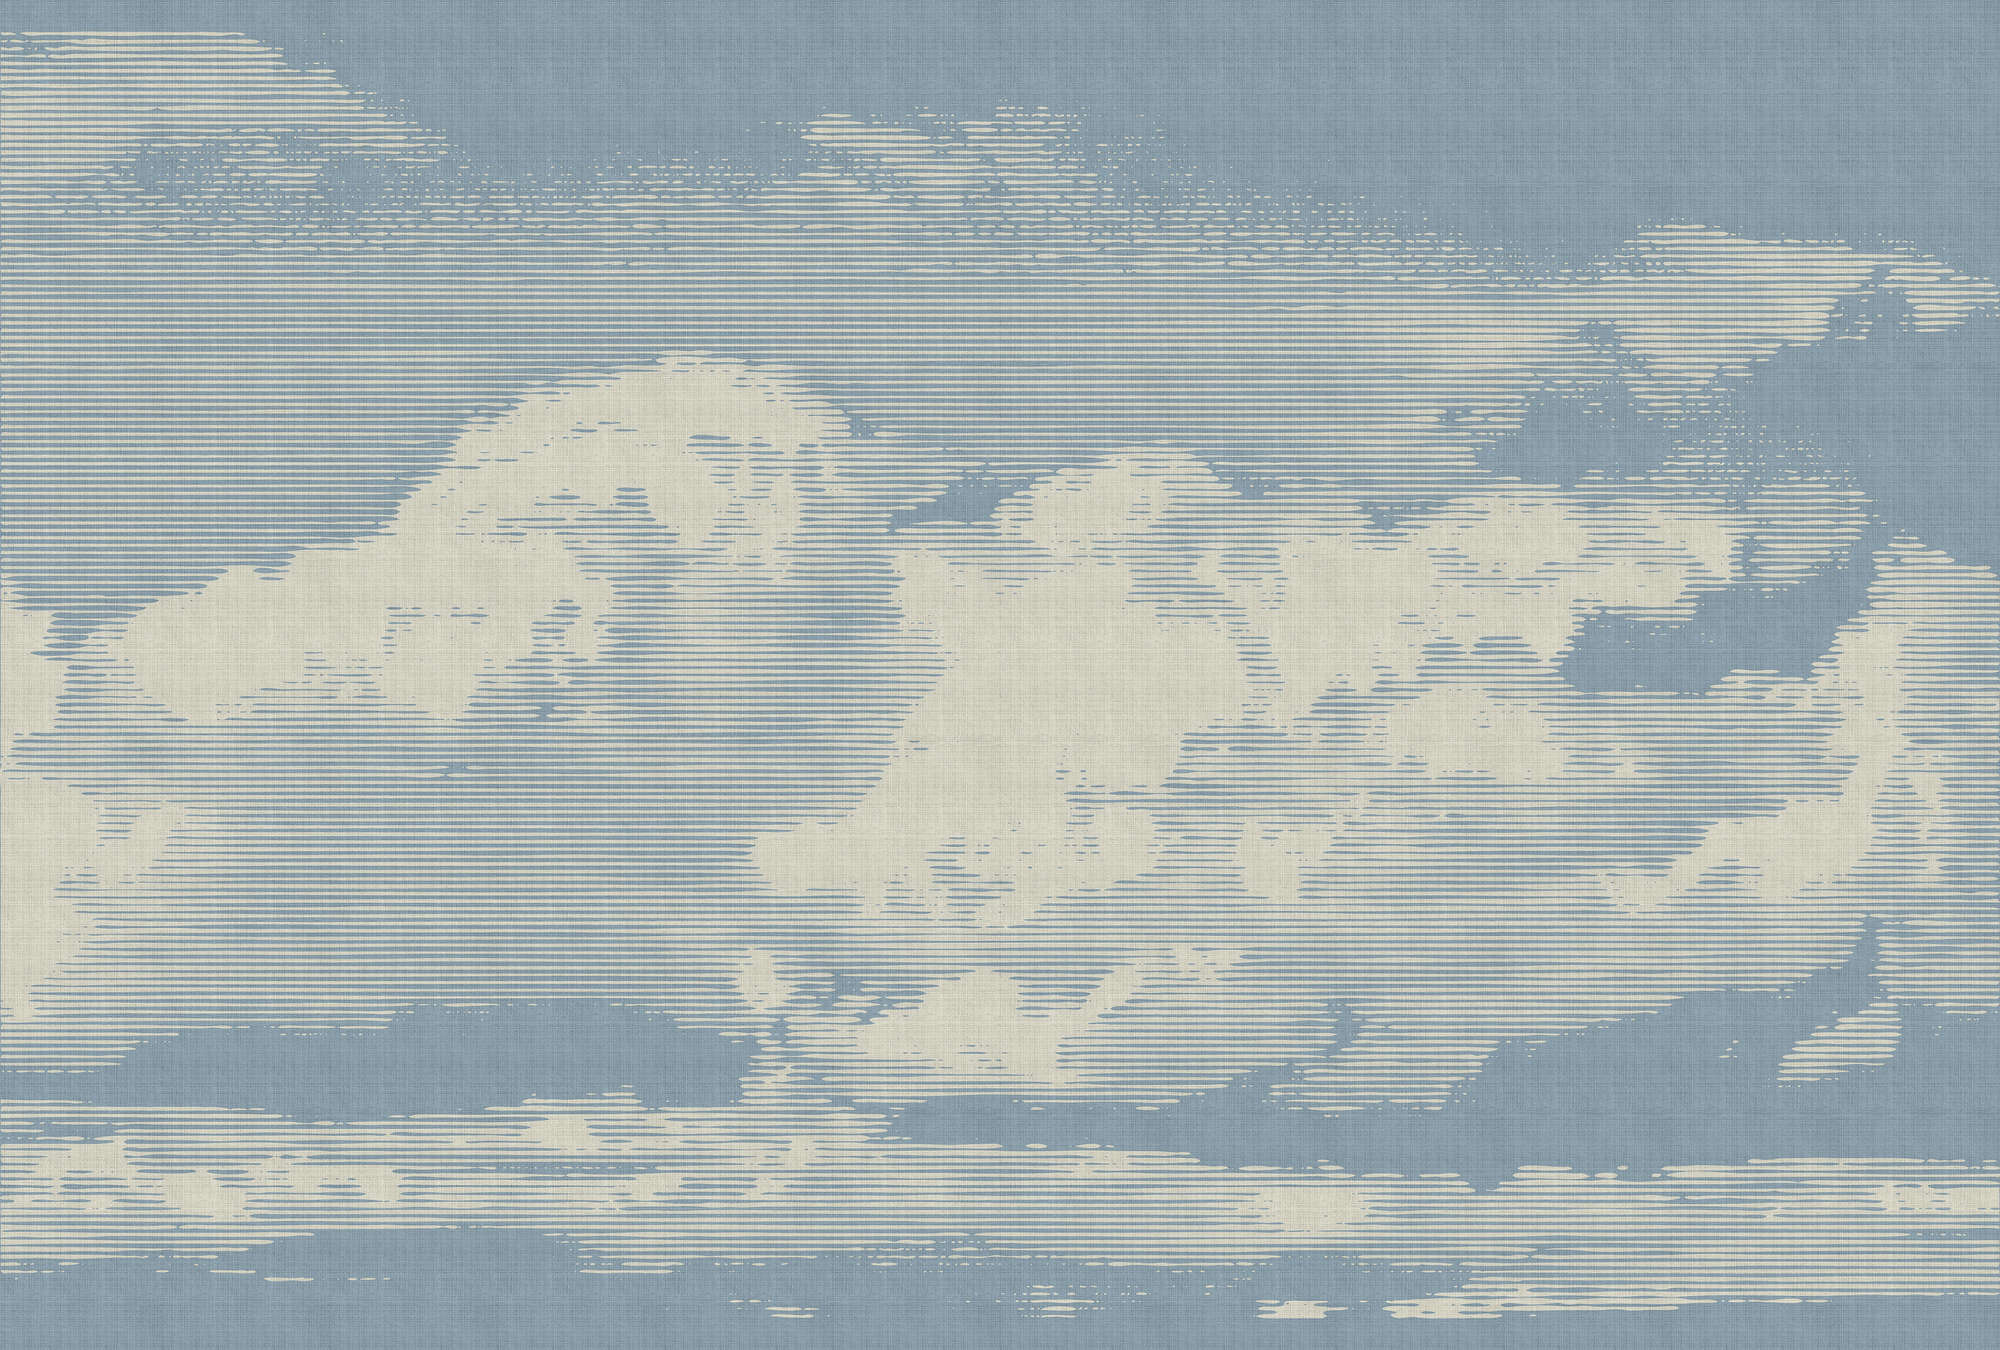             Clouds 1 - Hemels fotobehang met wolkenmotief in natuurlijke linnenstructuur - Beige, Blue | Pearl smooth non-woven
        